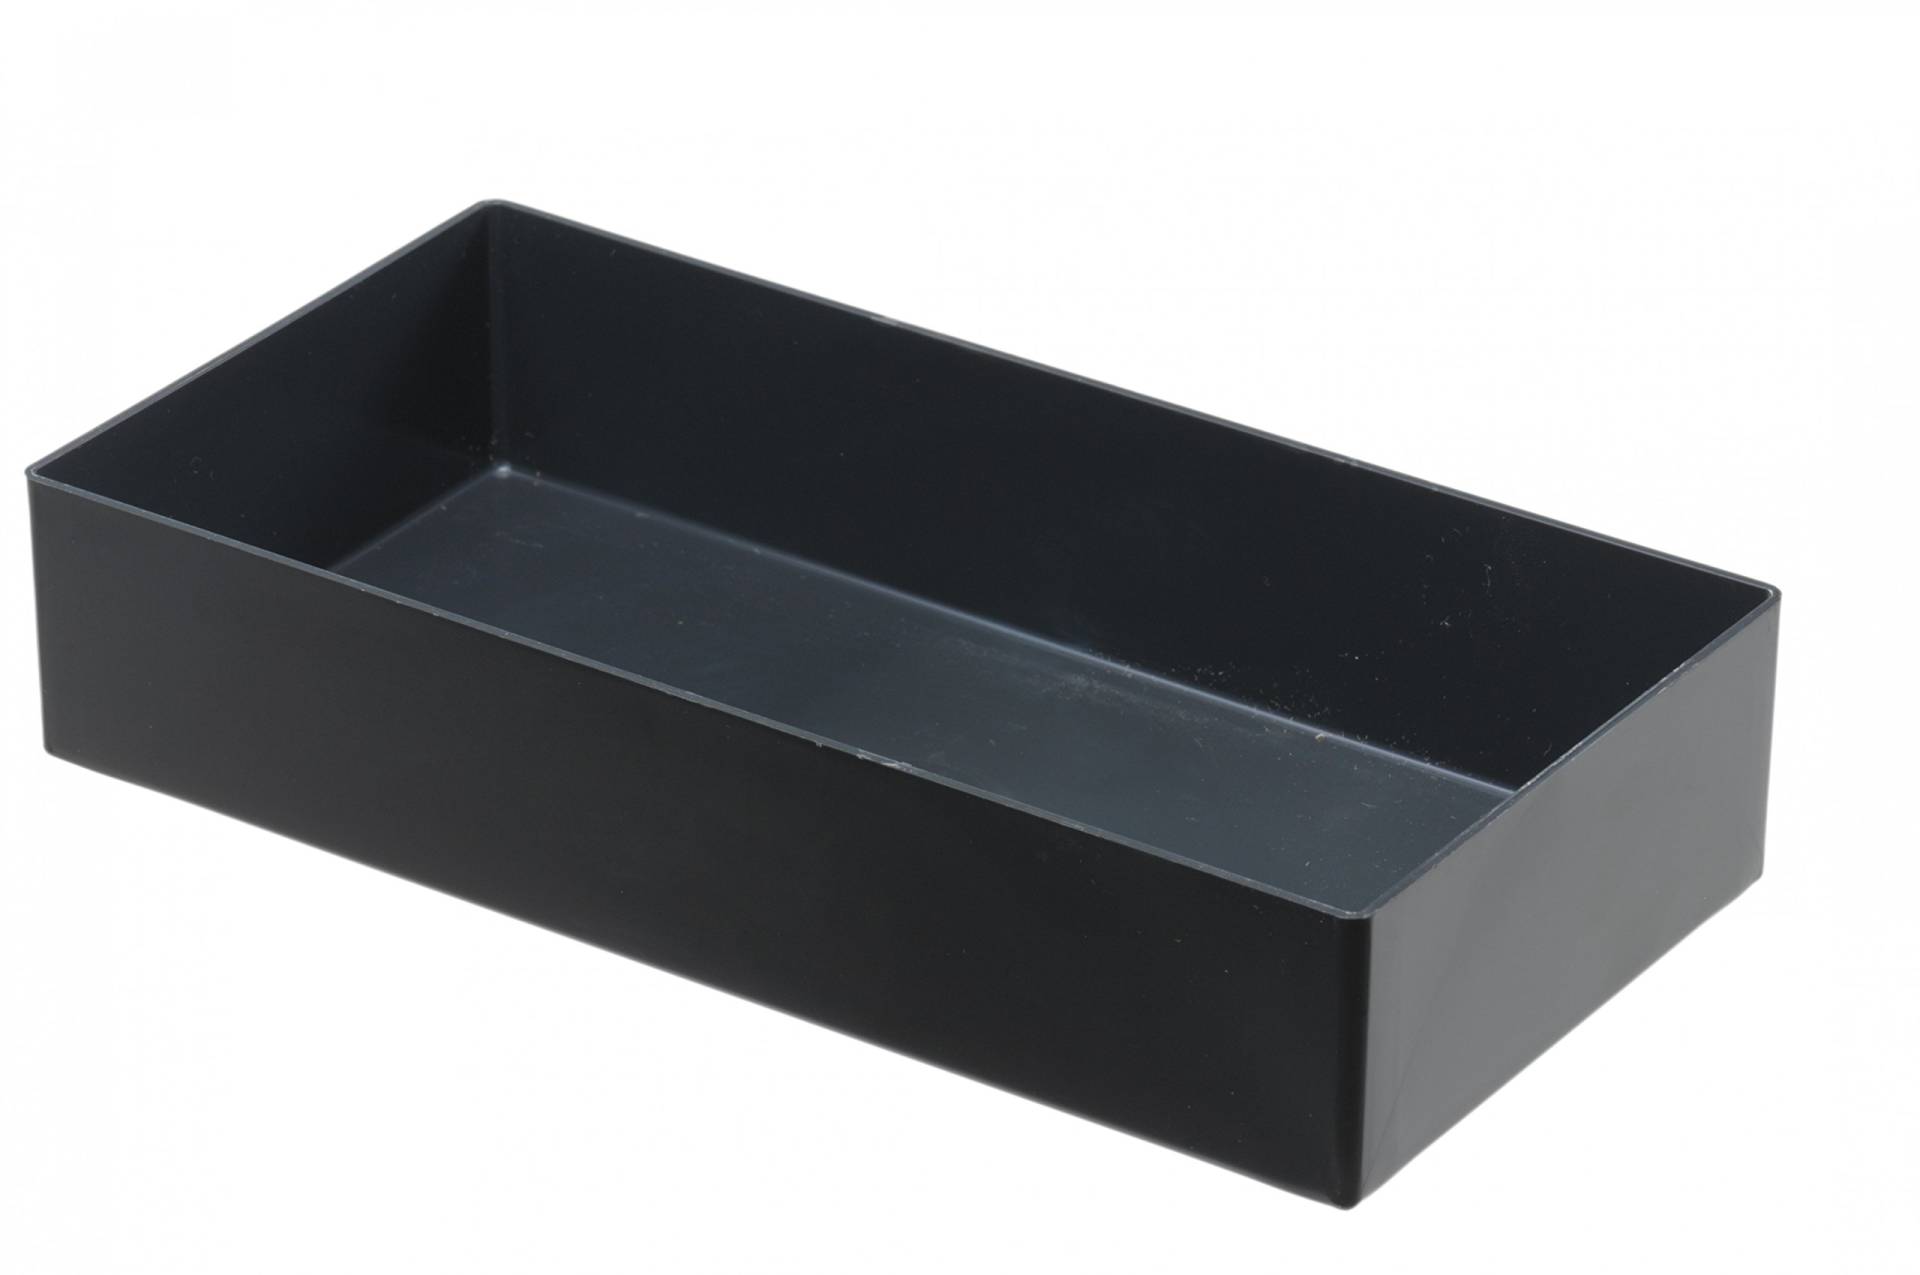 hünersdorff Einsatzbox aus hochschlagfestem Polystyrol (PS), Maße: 216 x 108 x 45 mm, Farbe: grau von hünersdorff